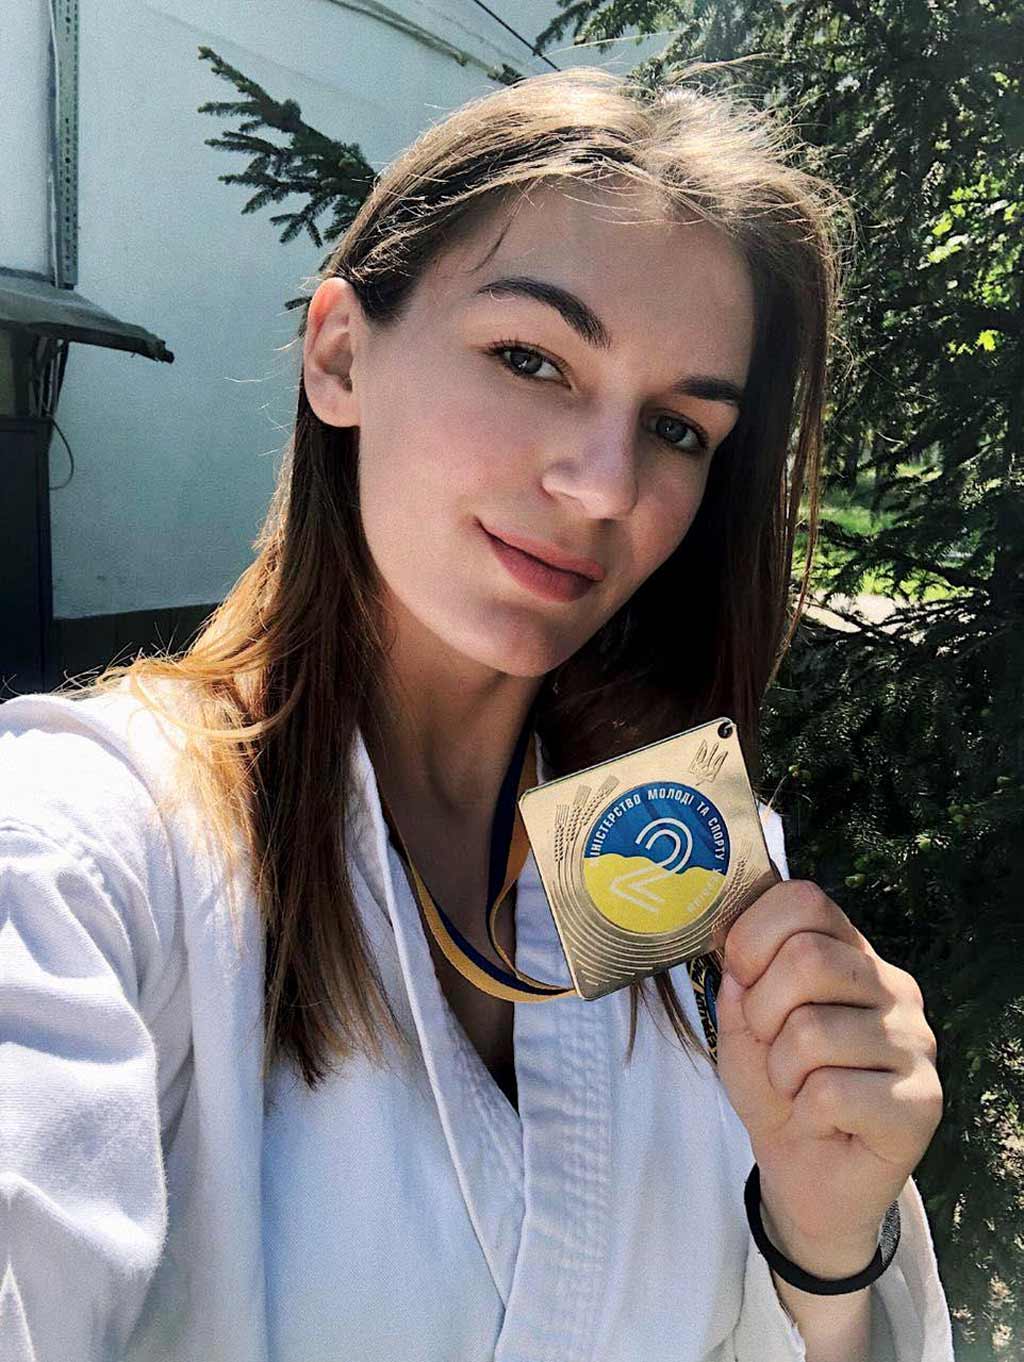 Курсантка ДДУВС Єлизавета Шкуренко стала срібною призеркою Чемпіонату України з рукопашного бою